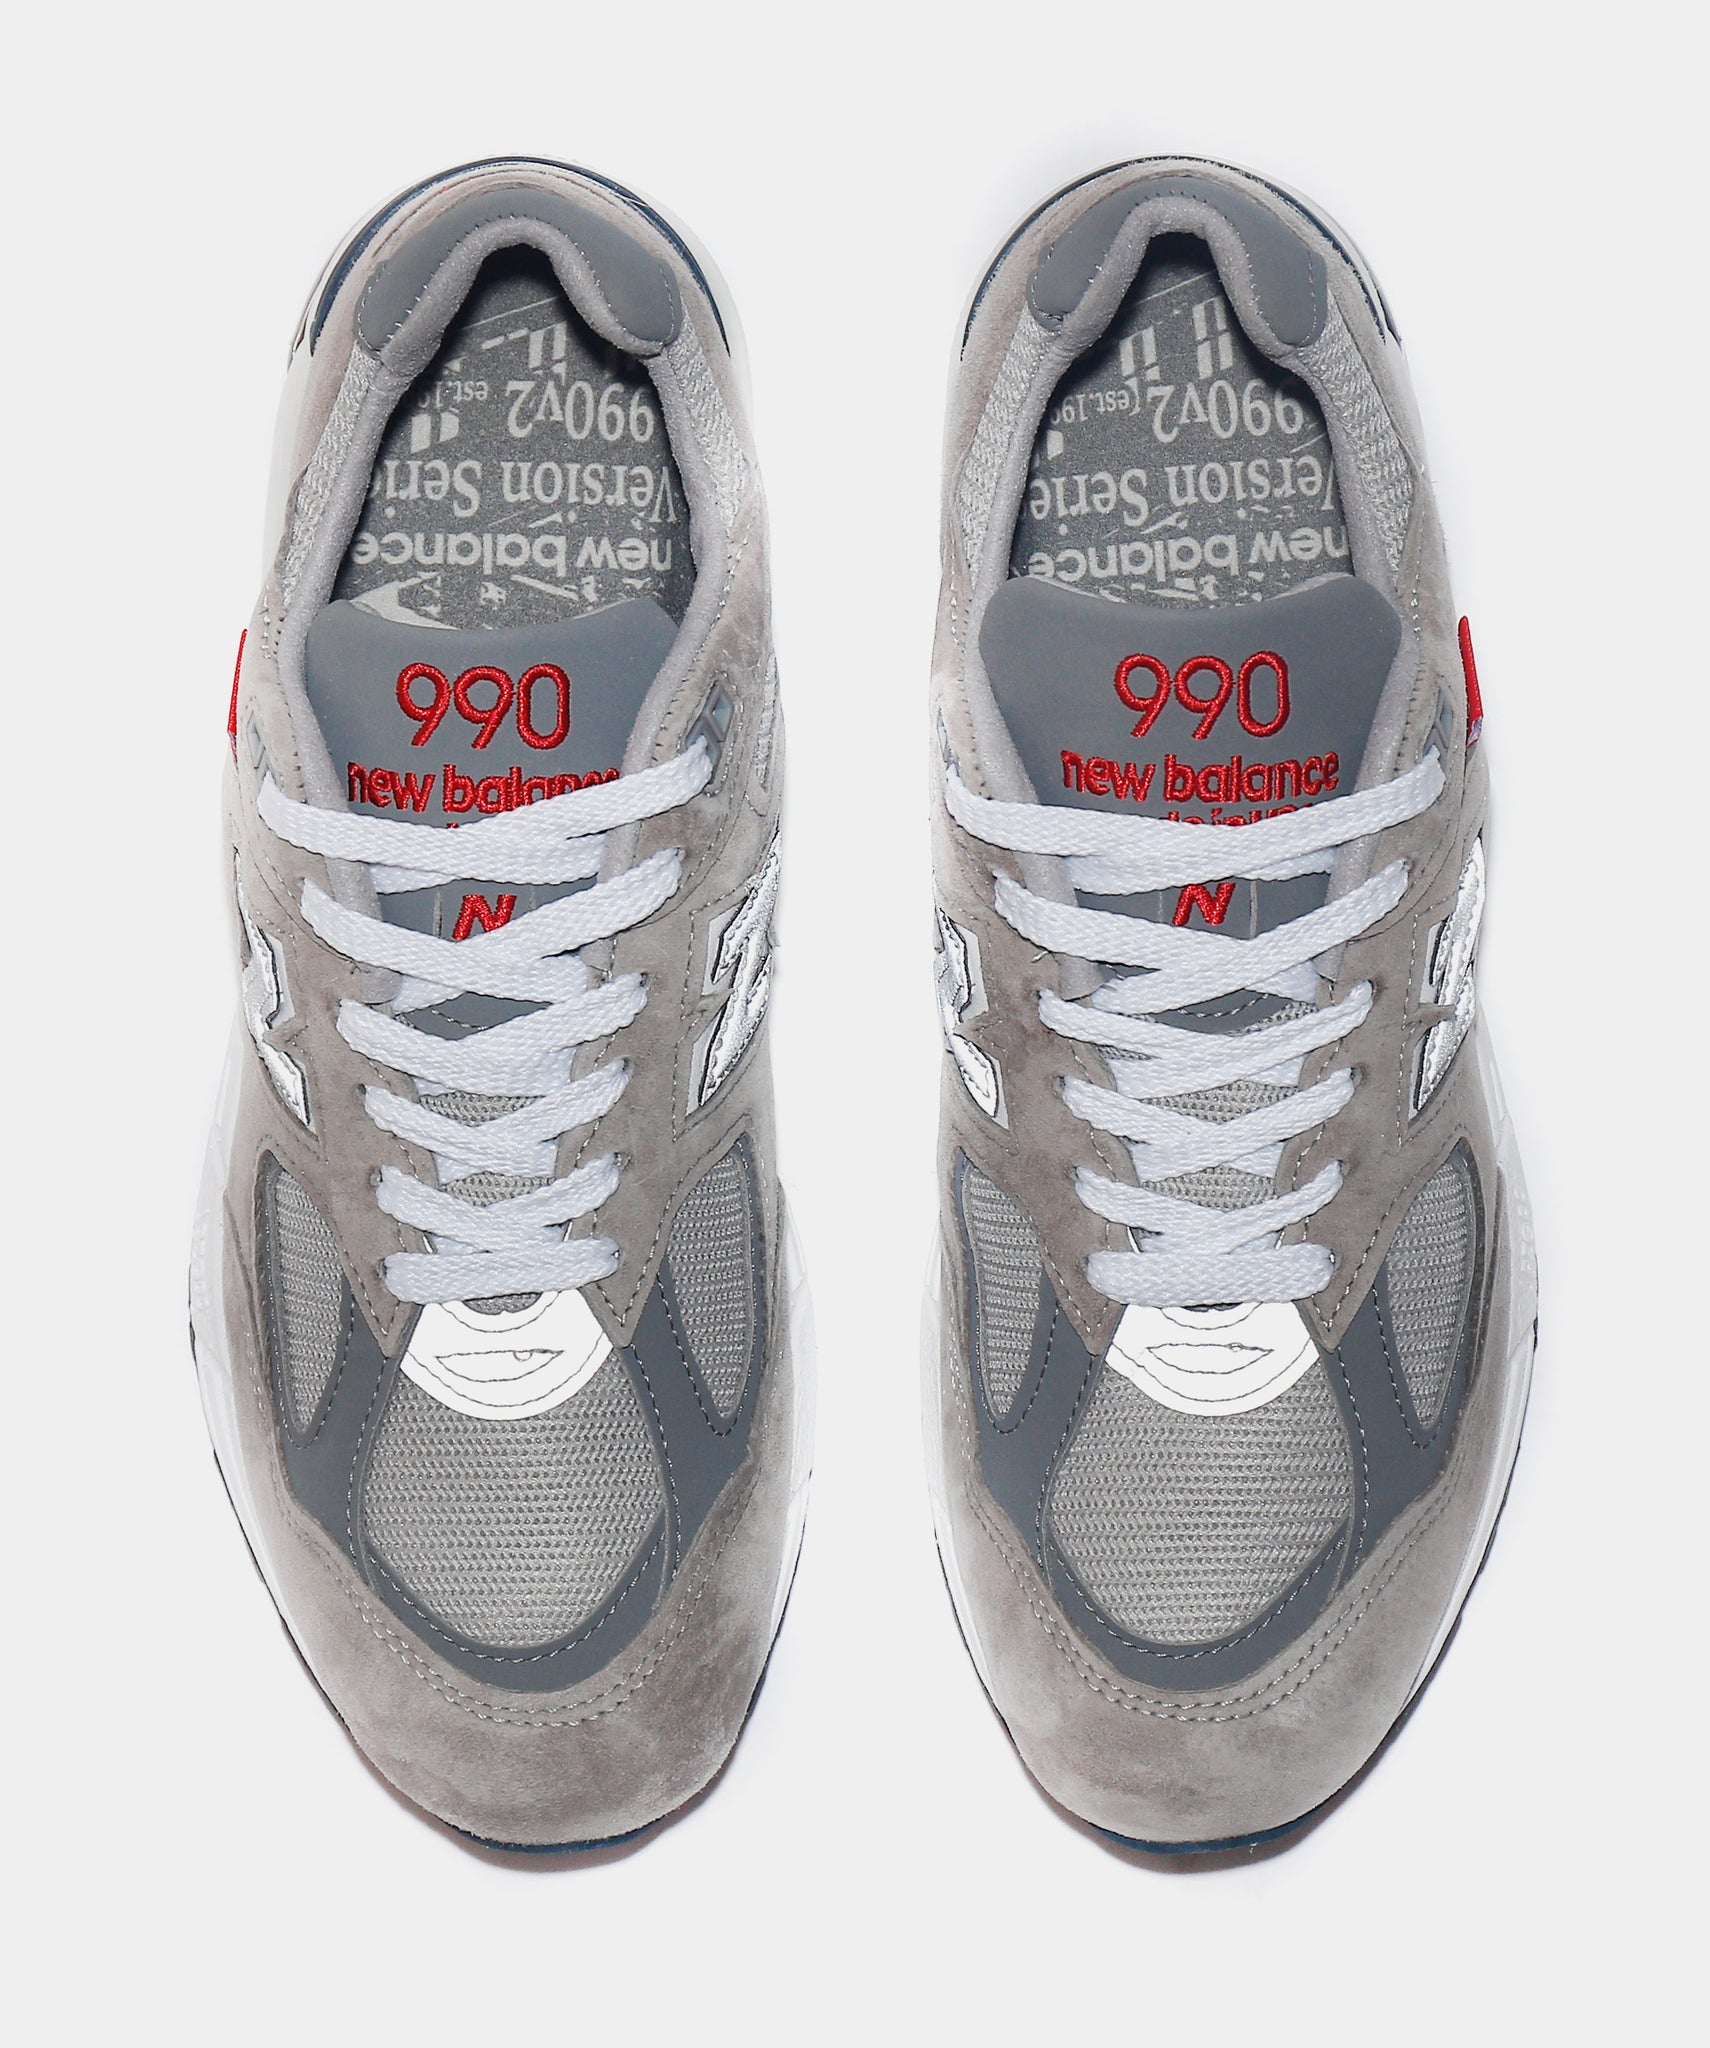 Made Us 990v2 Mens Running Shoe (Grey)